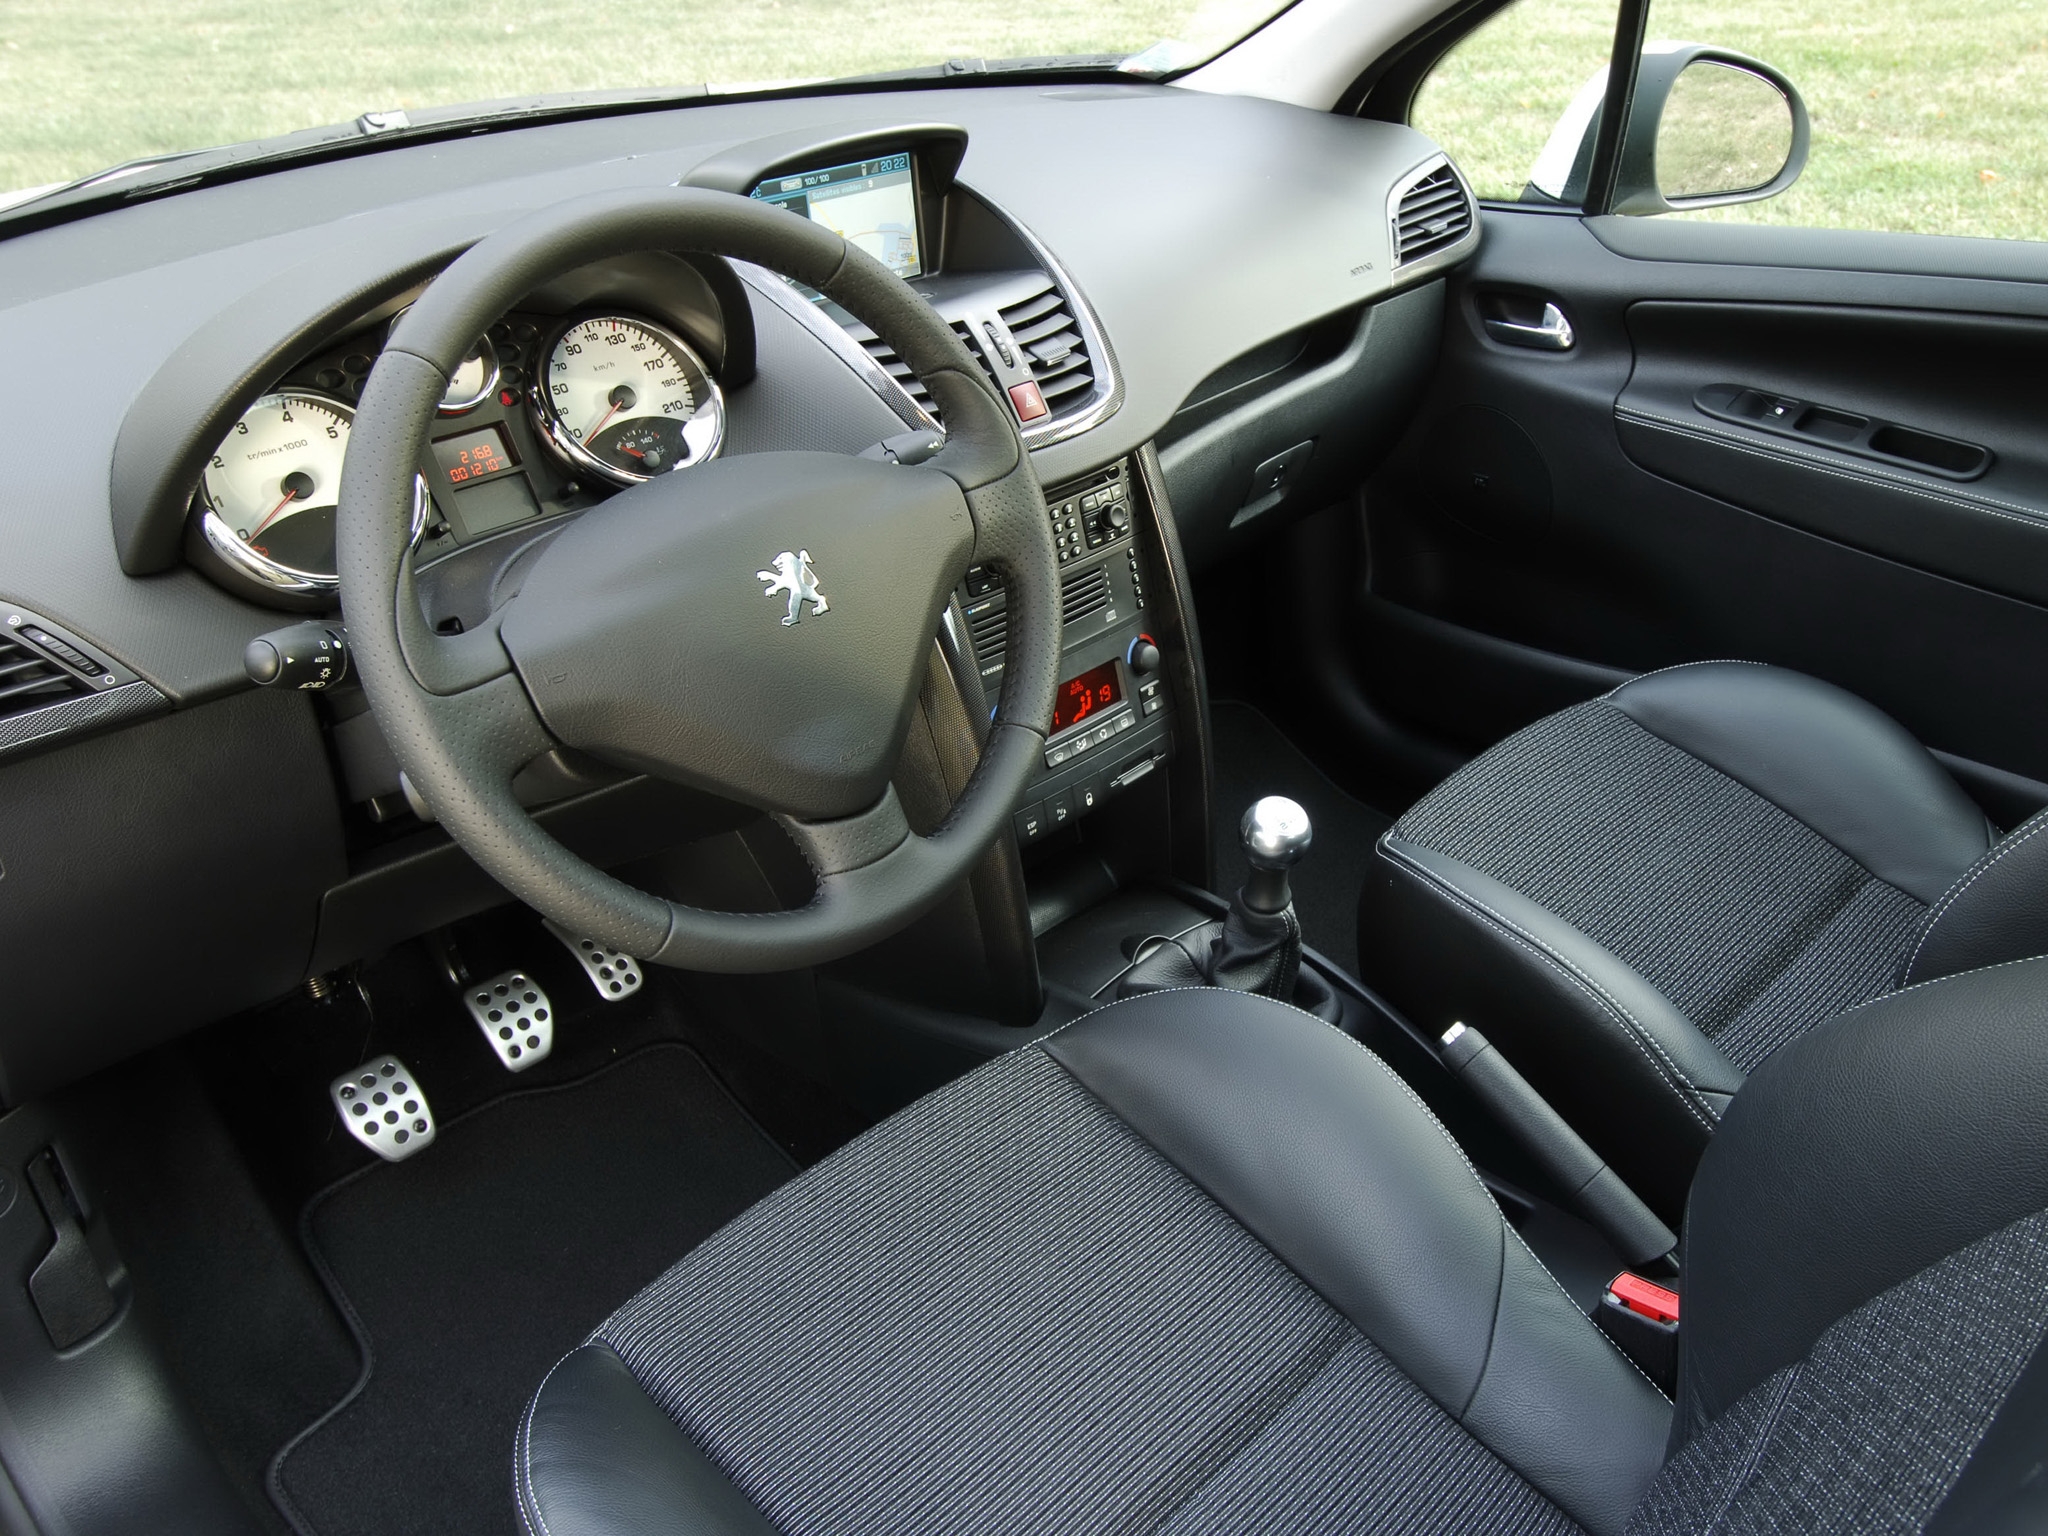 При движении на дисплее Peugeot 207 появляется “Gearbox faulty” и КПП 2-Tronic переходит в аварийный режим